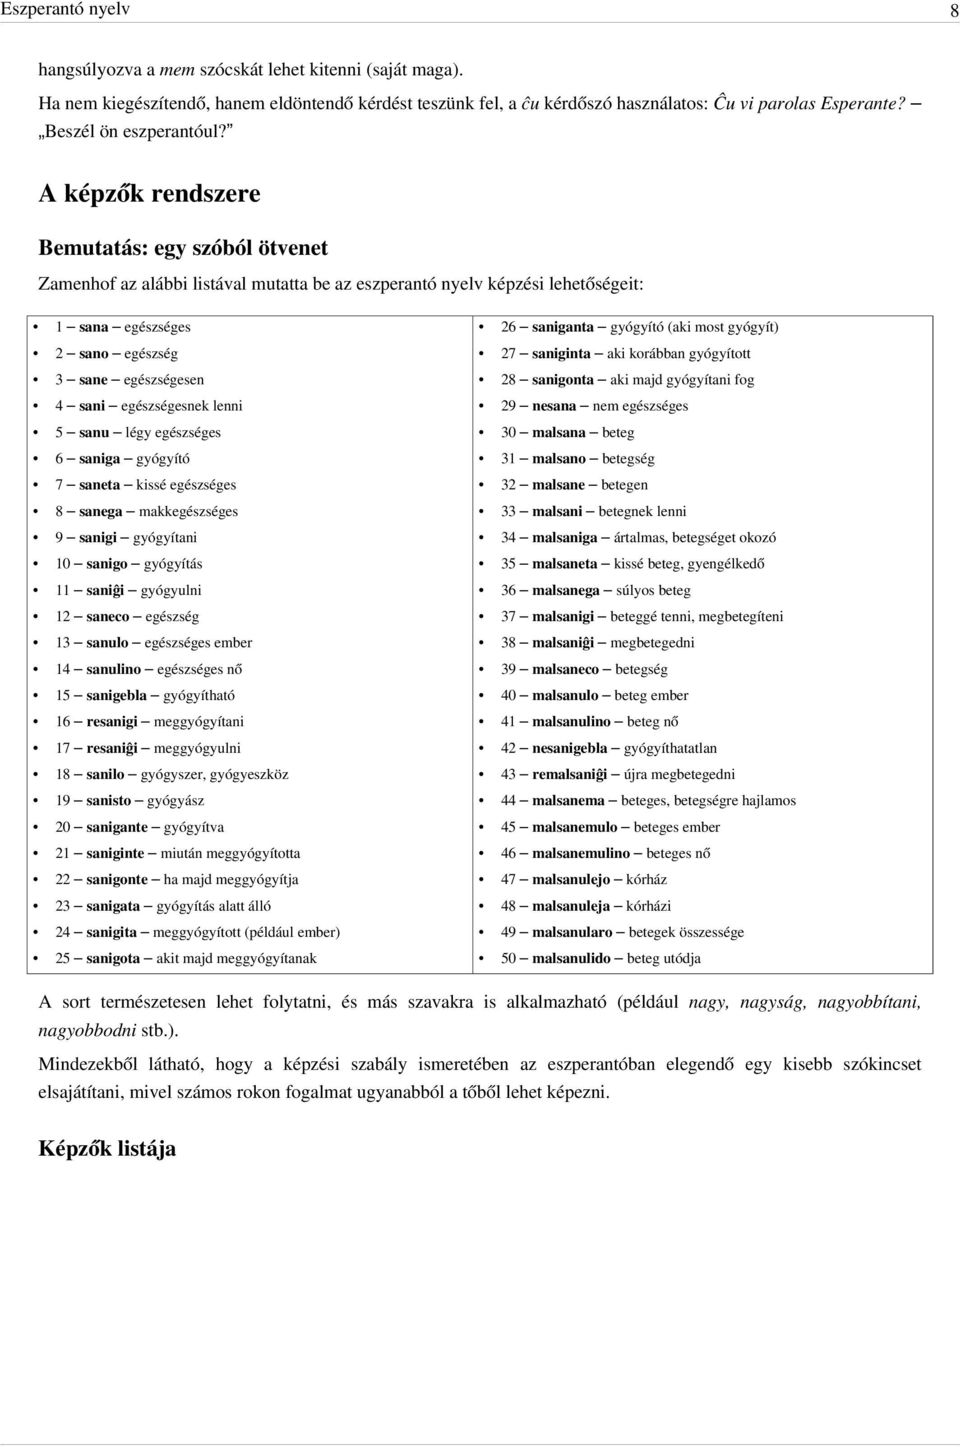 A képzők rendszere Bemutatás: egy szóból ötvenet Zamenhof az alábbi listával mutatta be az eszperantó nyelv képzési lehetőségeit: 1 sana egészséges 26 saniganta gyógyító (aki most gyógyít) 2 sano